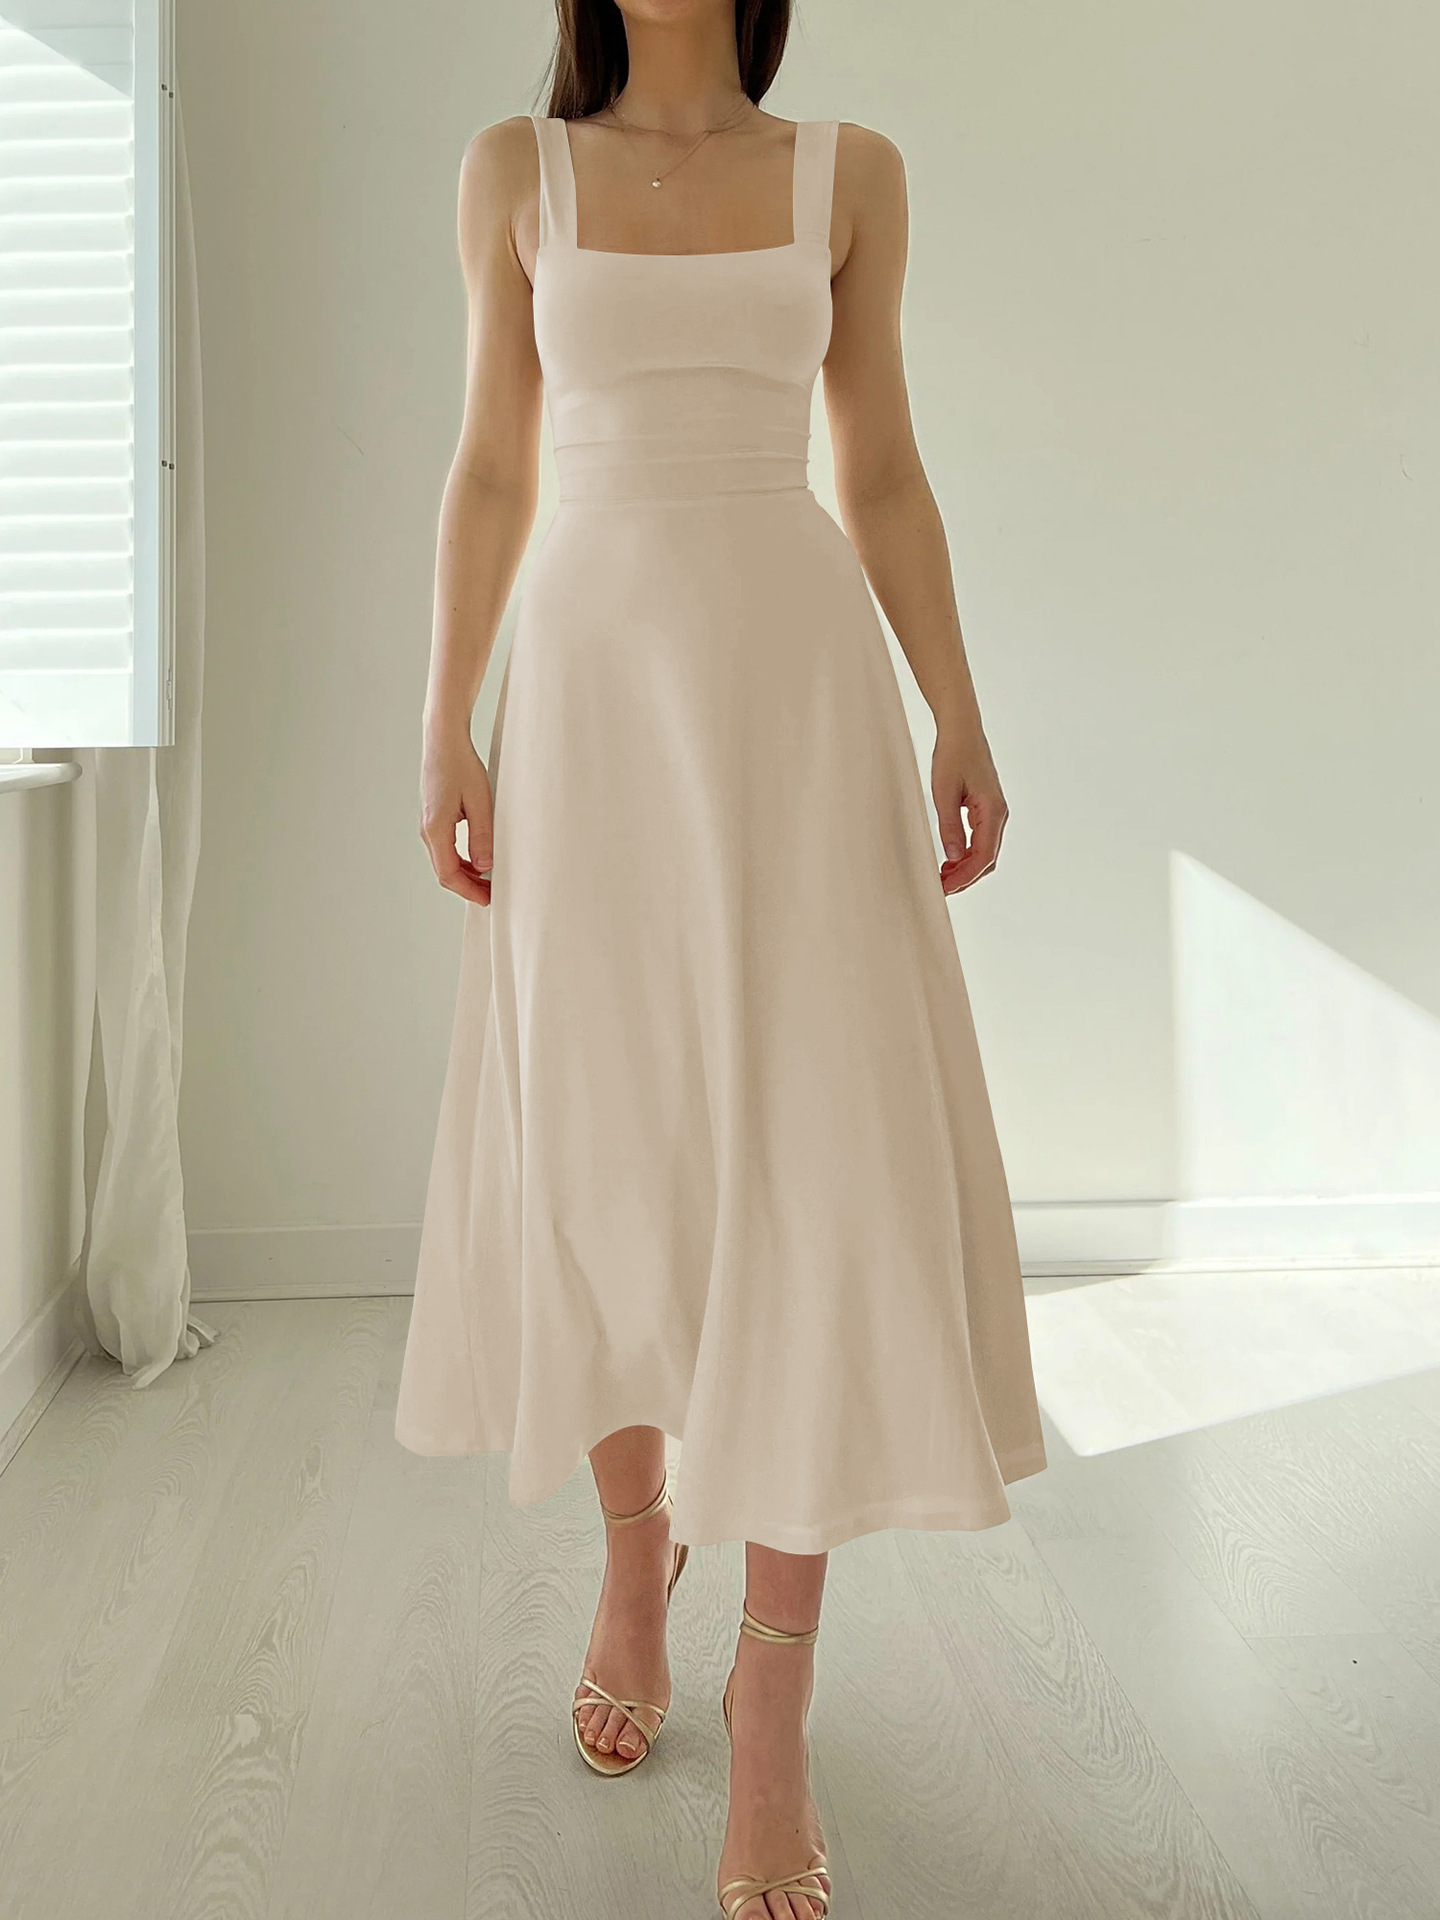 Falda sexy sin tirantes para mujer, falda larga francesa con cordones, vestido de estilo nuevo de primavera y verano, sentido de alta calidad